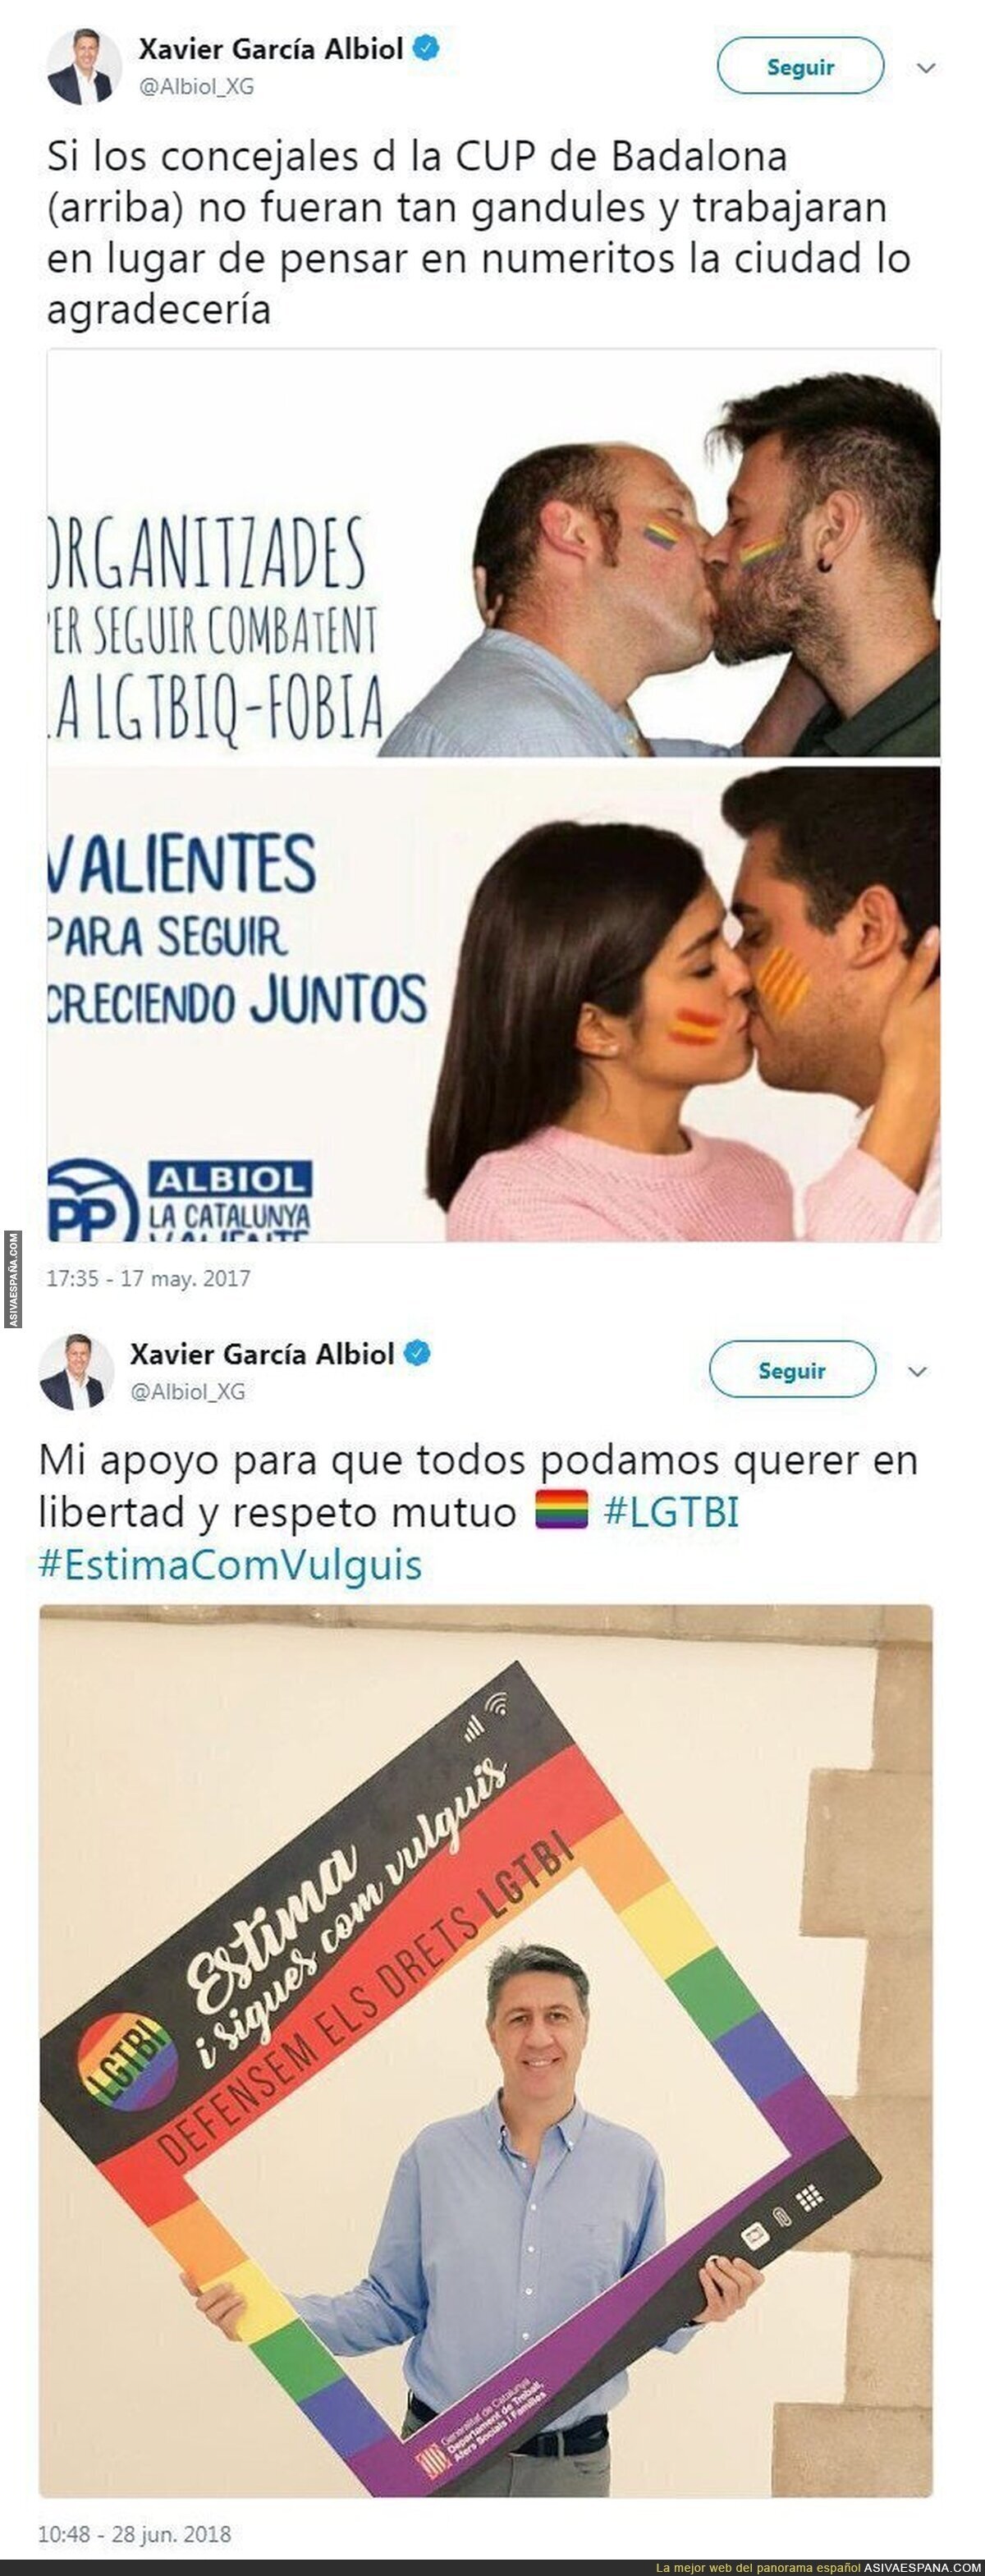 Este es el repugnante doble rasero de Xavier García Albiol con el movimiento LGTBI